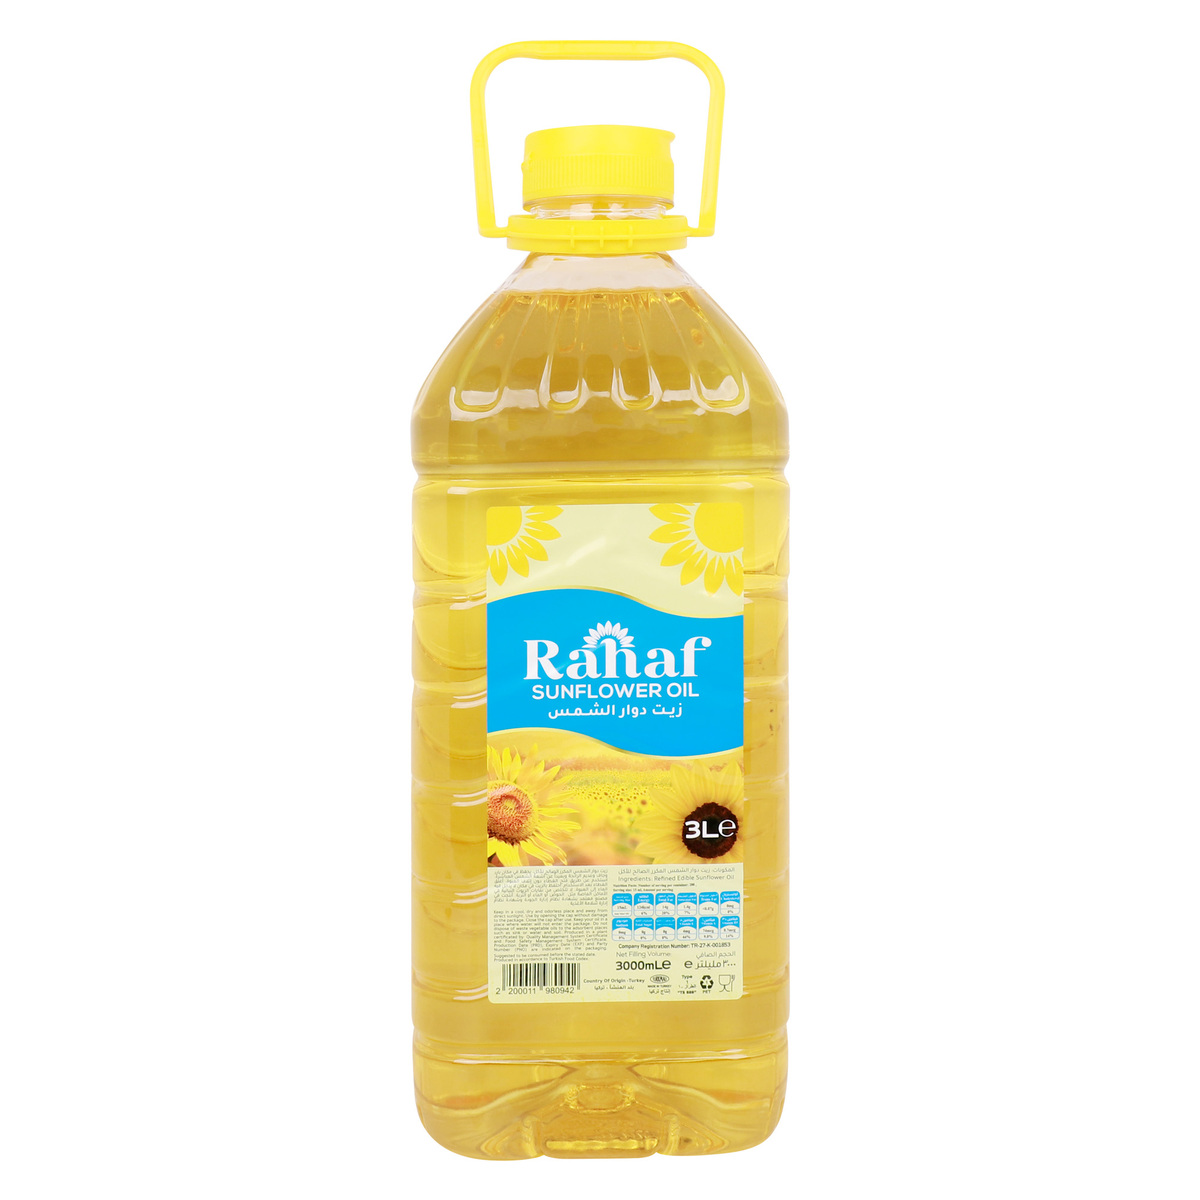 اشتري قم بشراء رهف زيت دوار الشمس 3 لتر Online at Best Price من الموقع - من لولو هايبر ماركت Sunflower Oil في الكويت